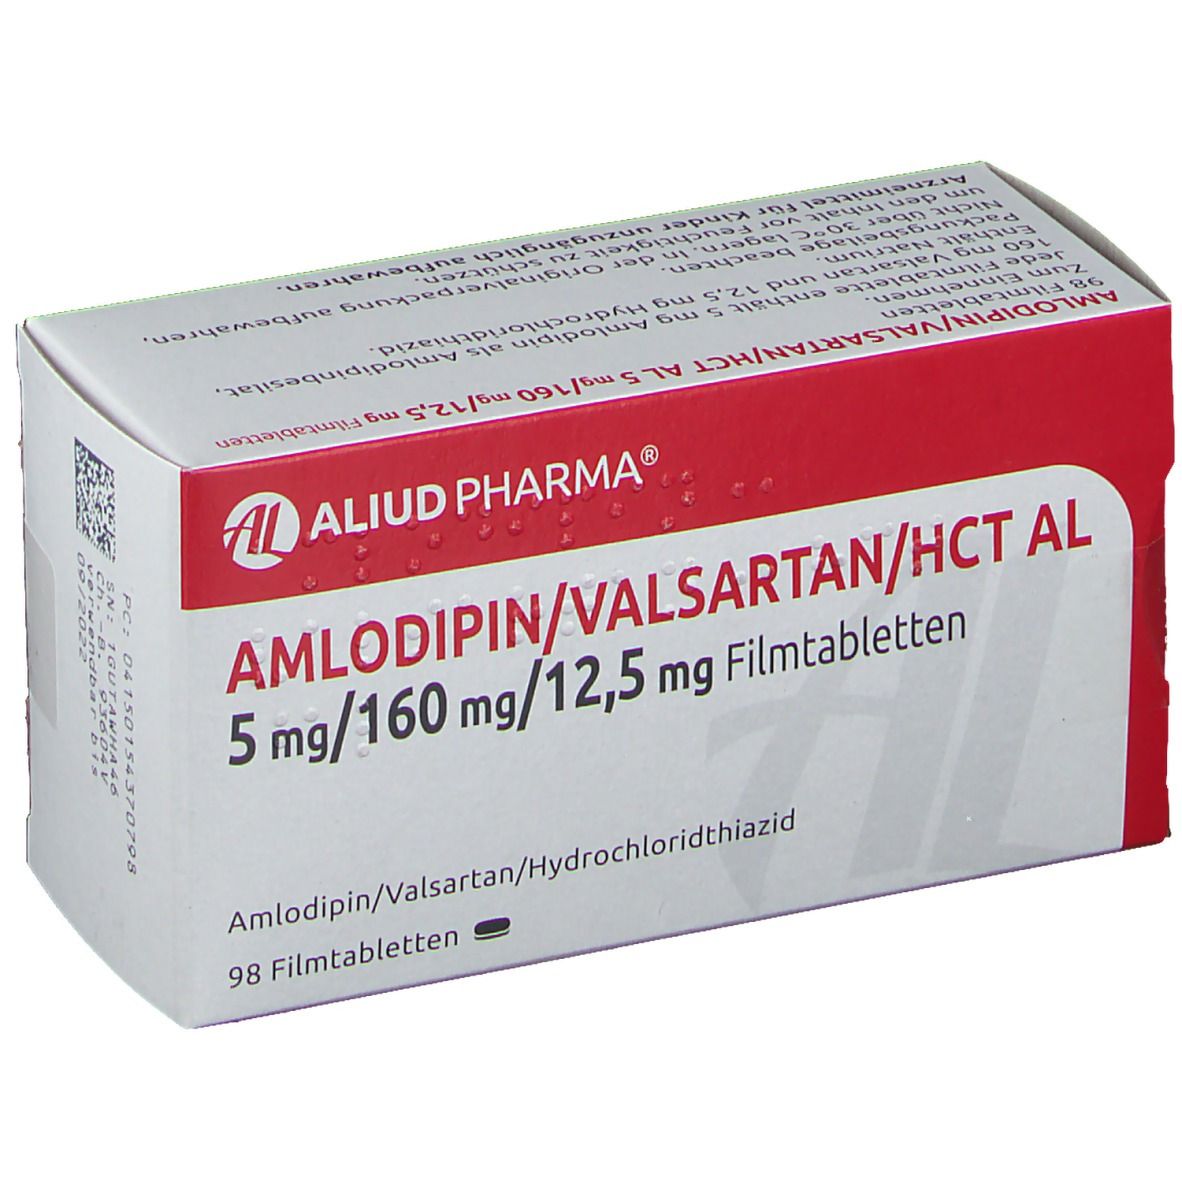 Amlodipin/Valsartan/HCT AL 5 mg/160 mg/12,5 mg